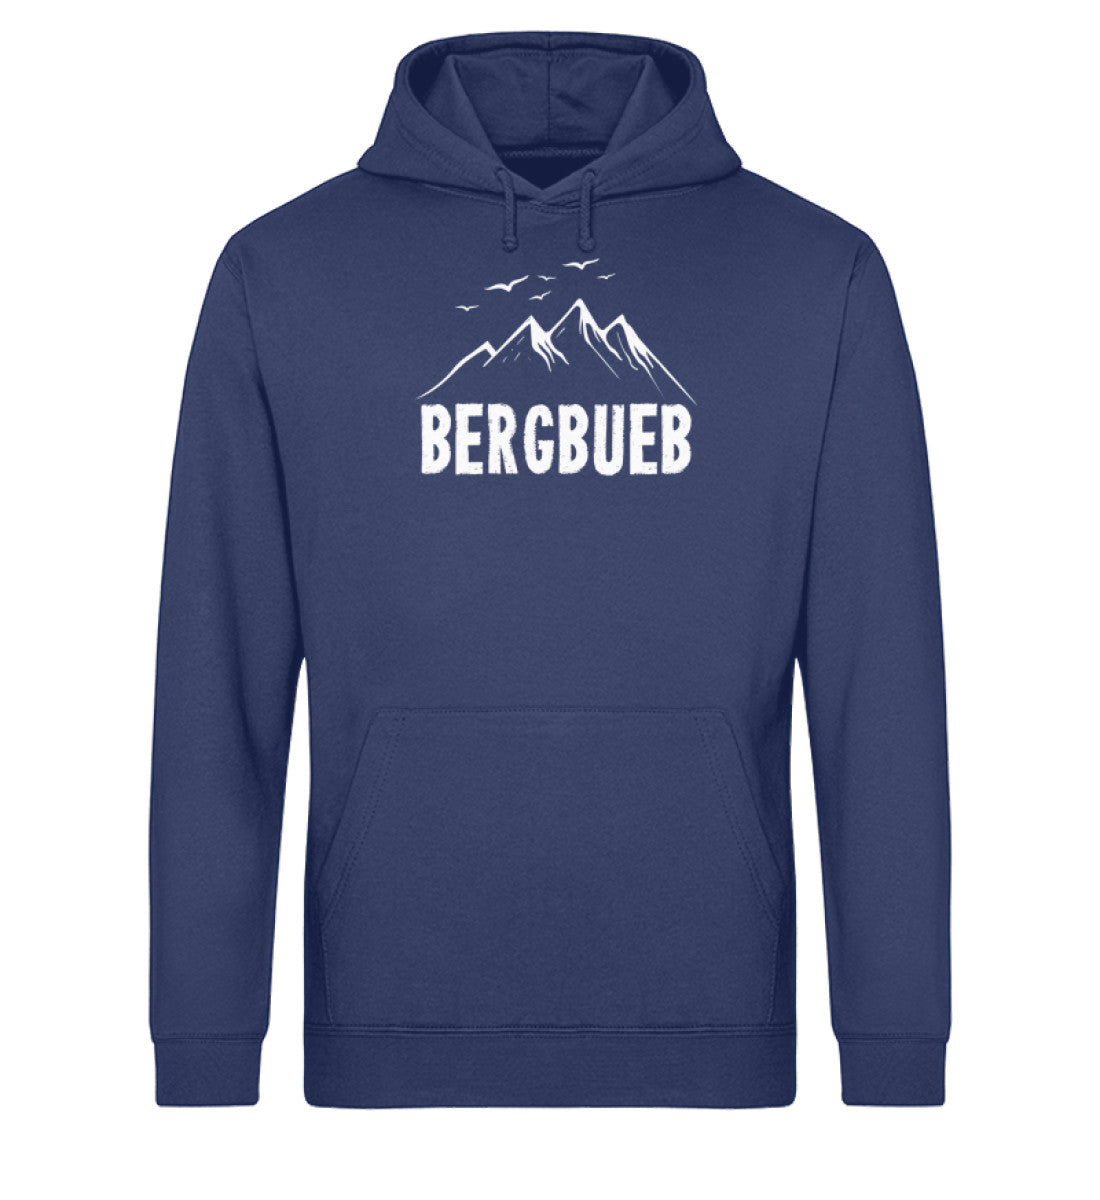 Bergbueb - Unisex Organic Hoodie berge Navyblau